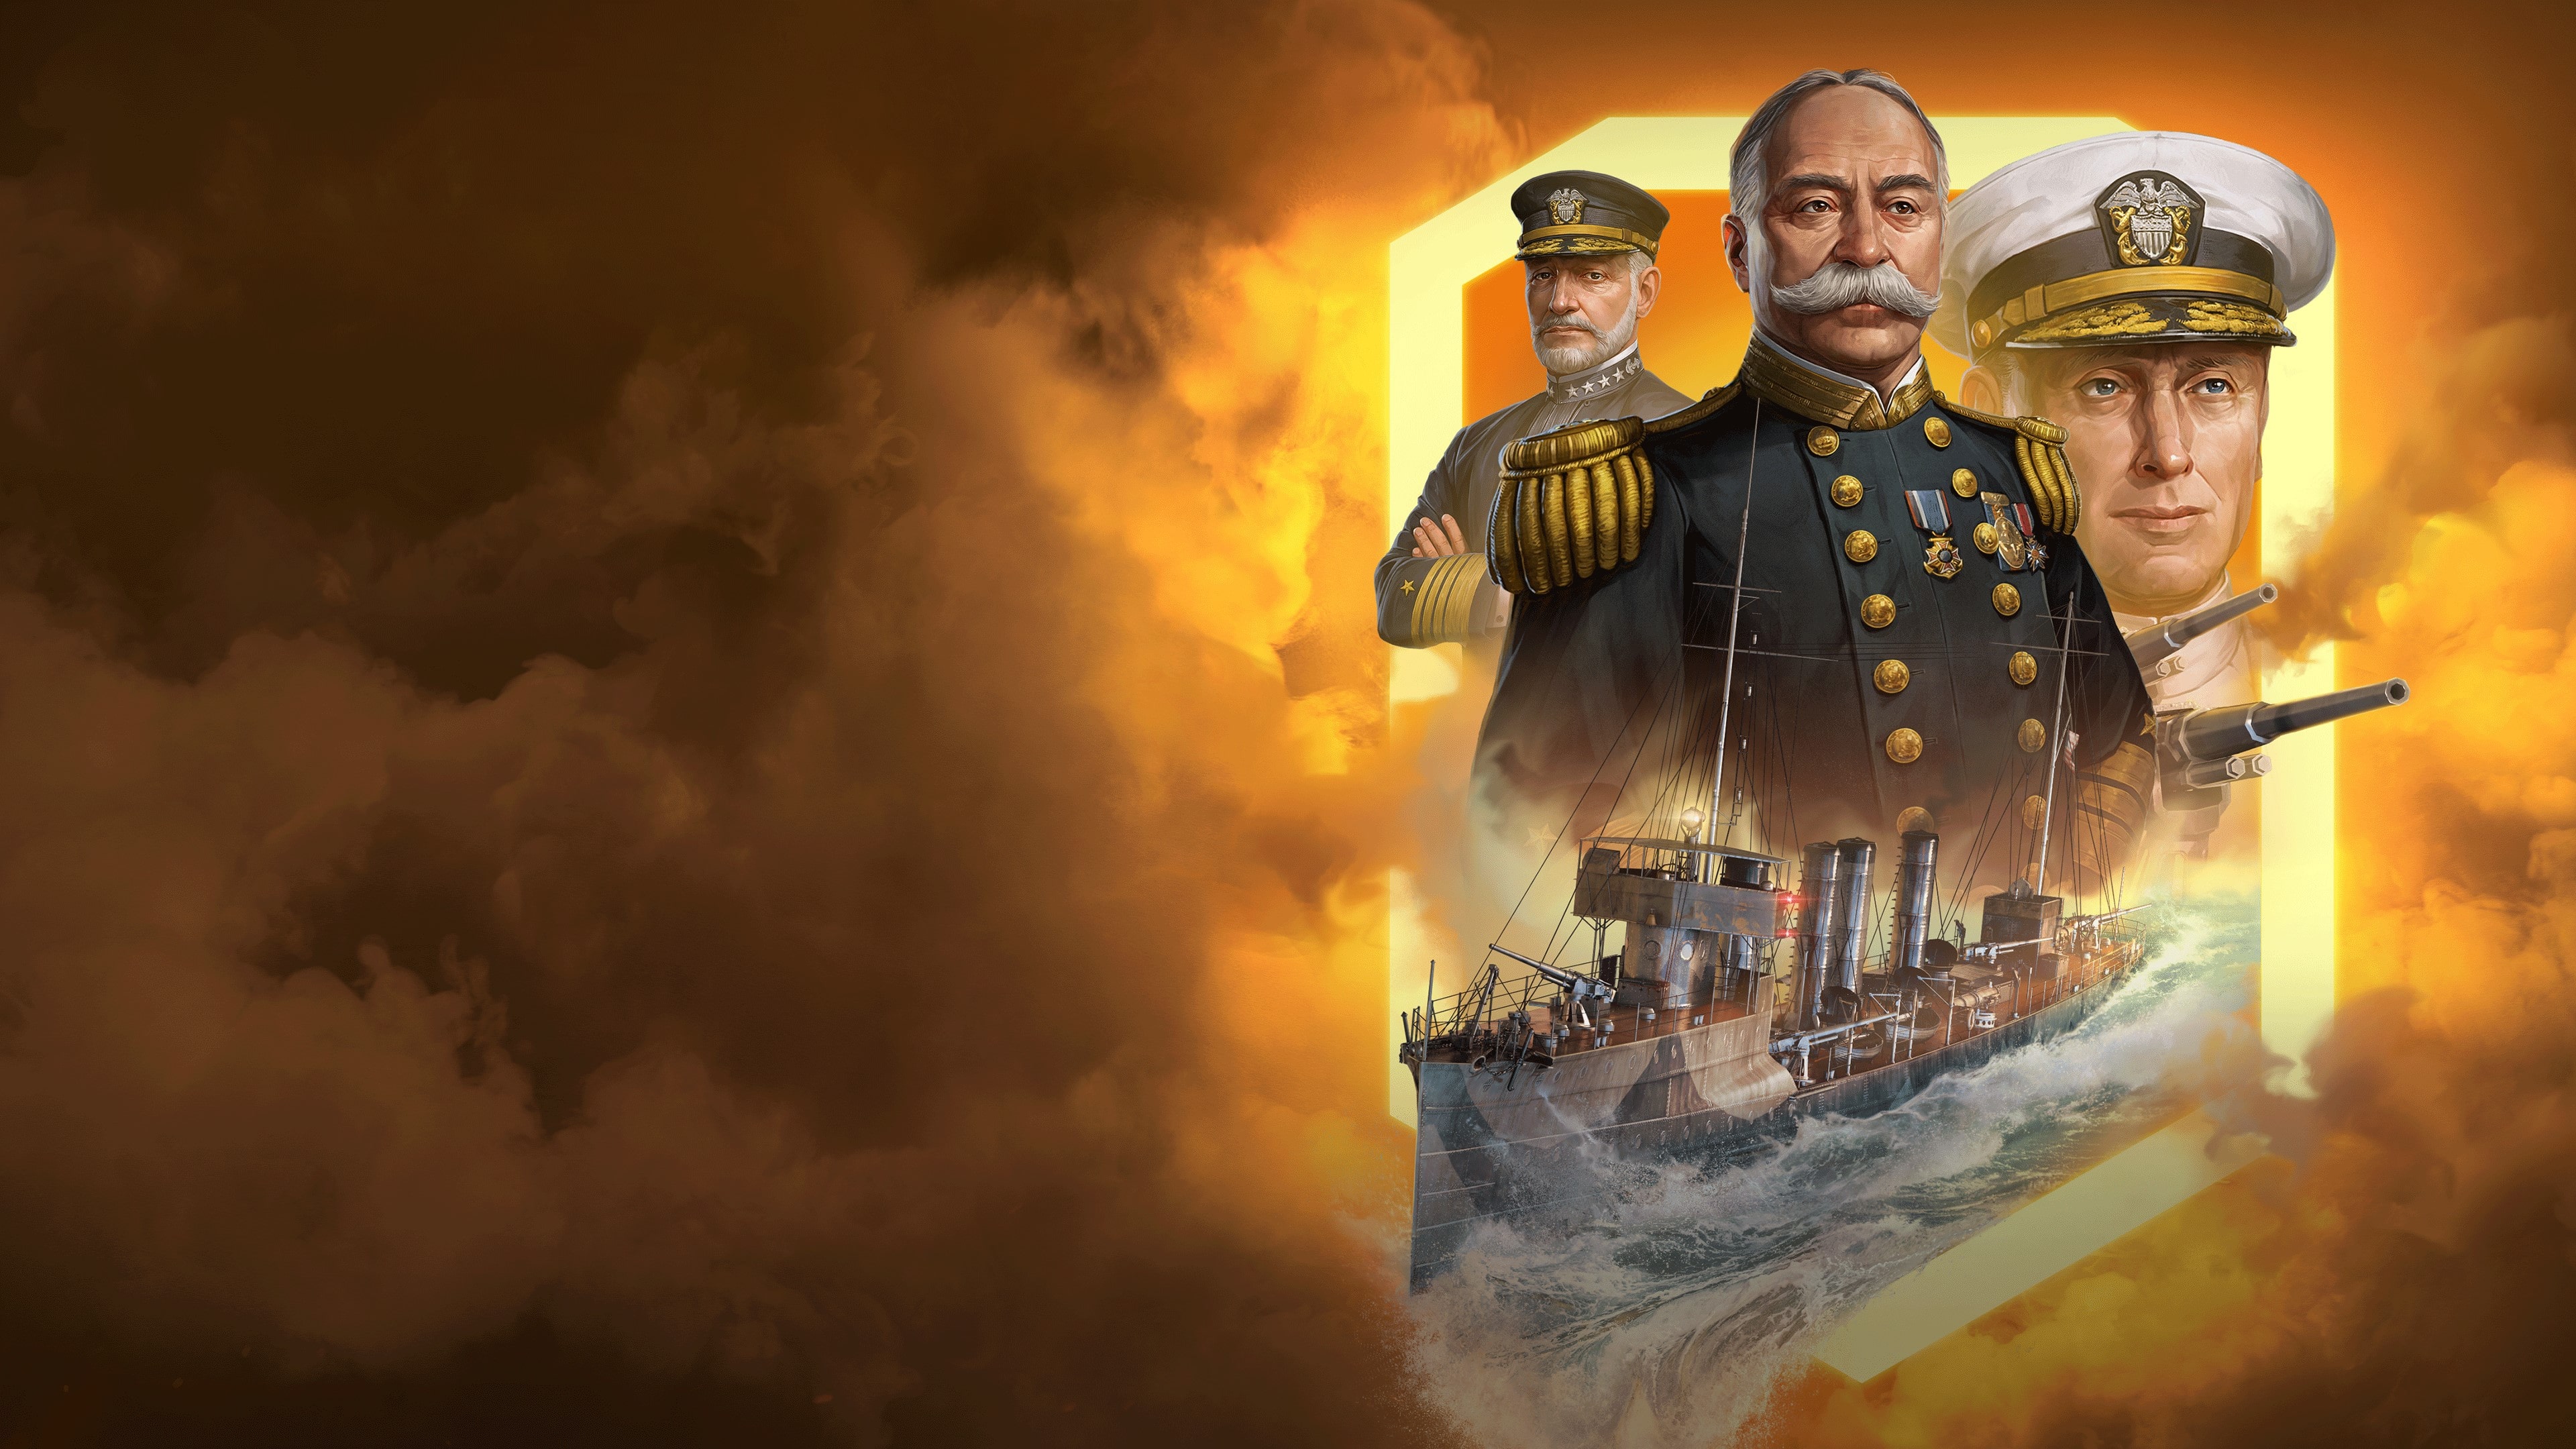 World of Warships: Legends — PS4 Mestre torpedeiro